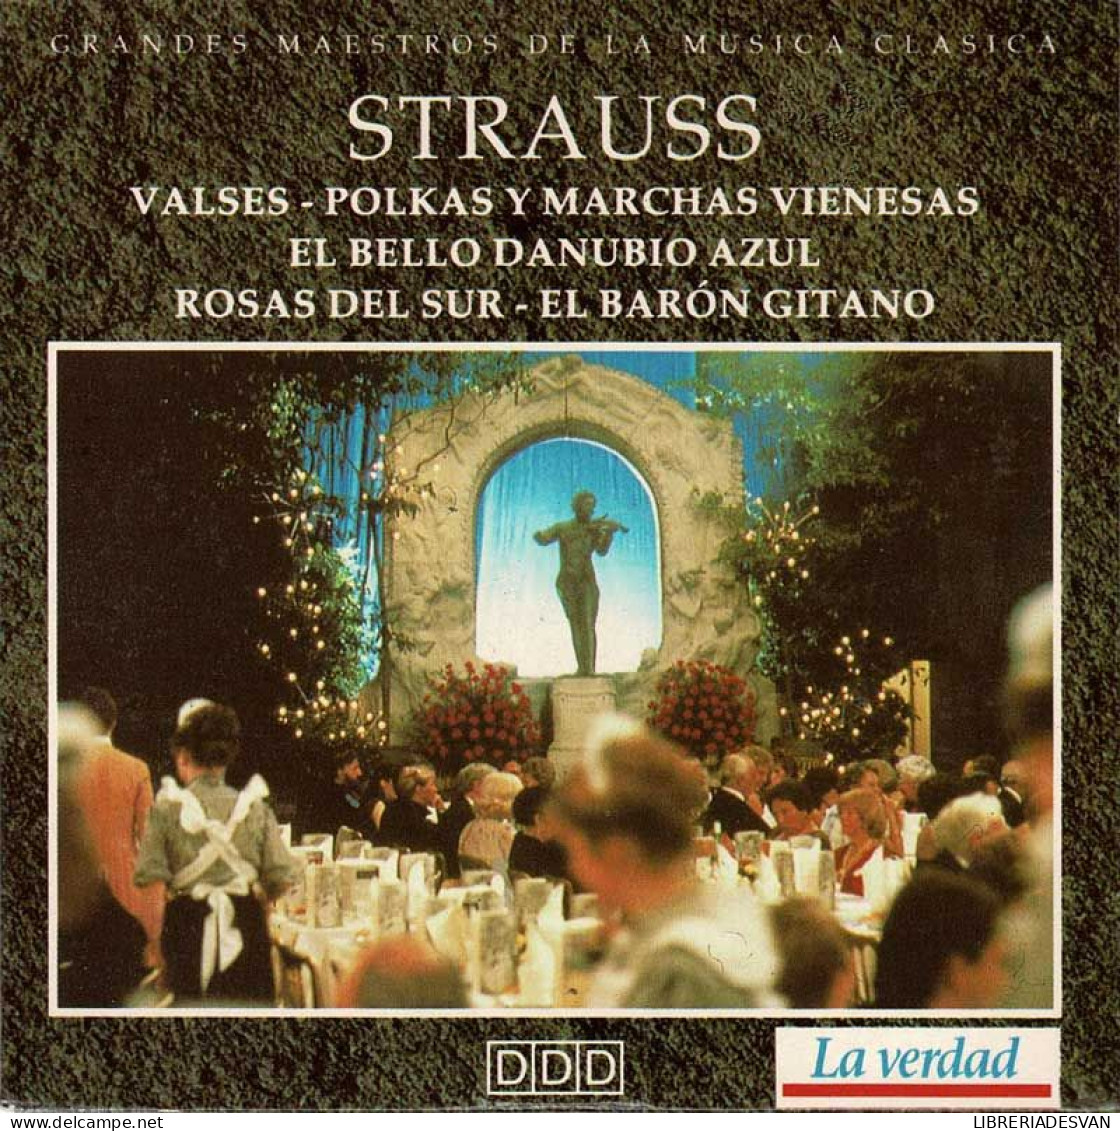 Strauss - Valses. Polkas Y Marchas Vienesas. El Bello Danubio Azul. Rosas Del Sur. El Barón Gitano. CD - Klassiekers